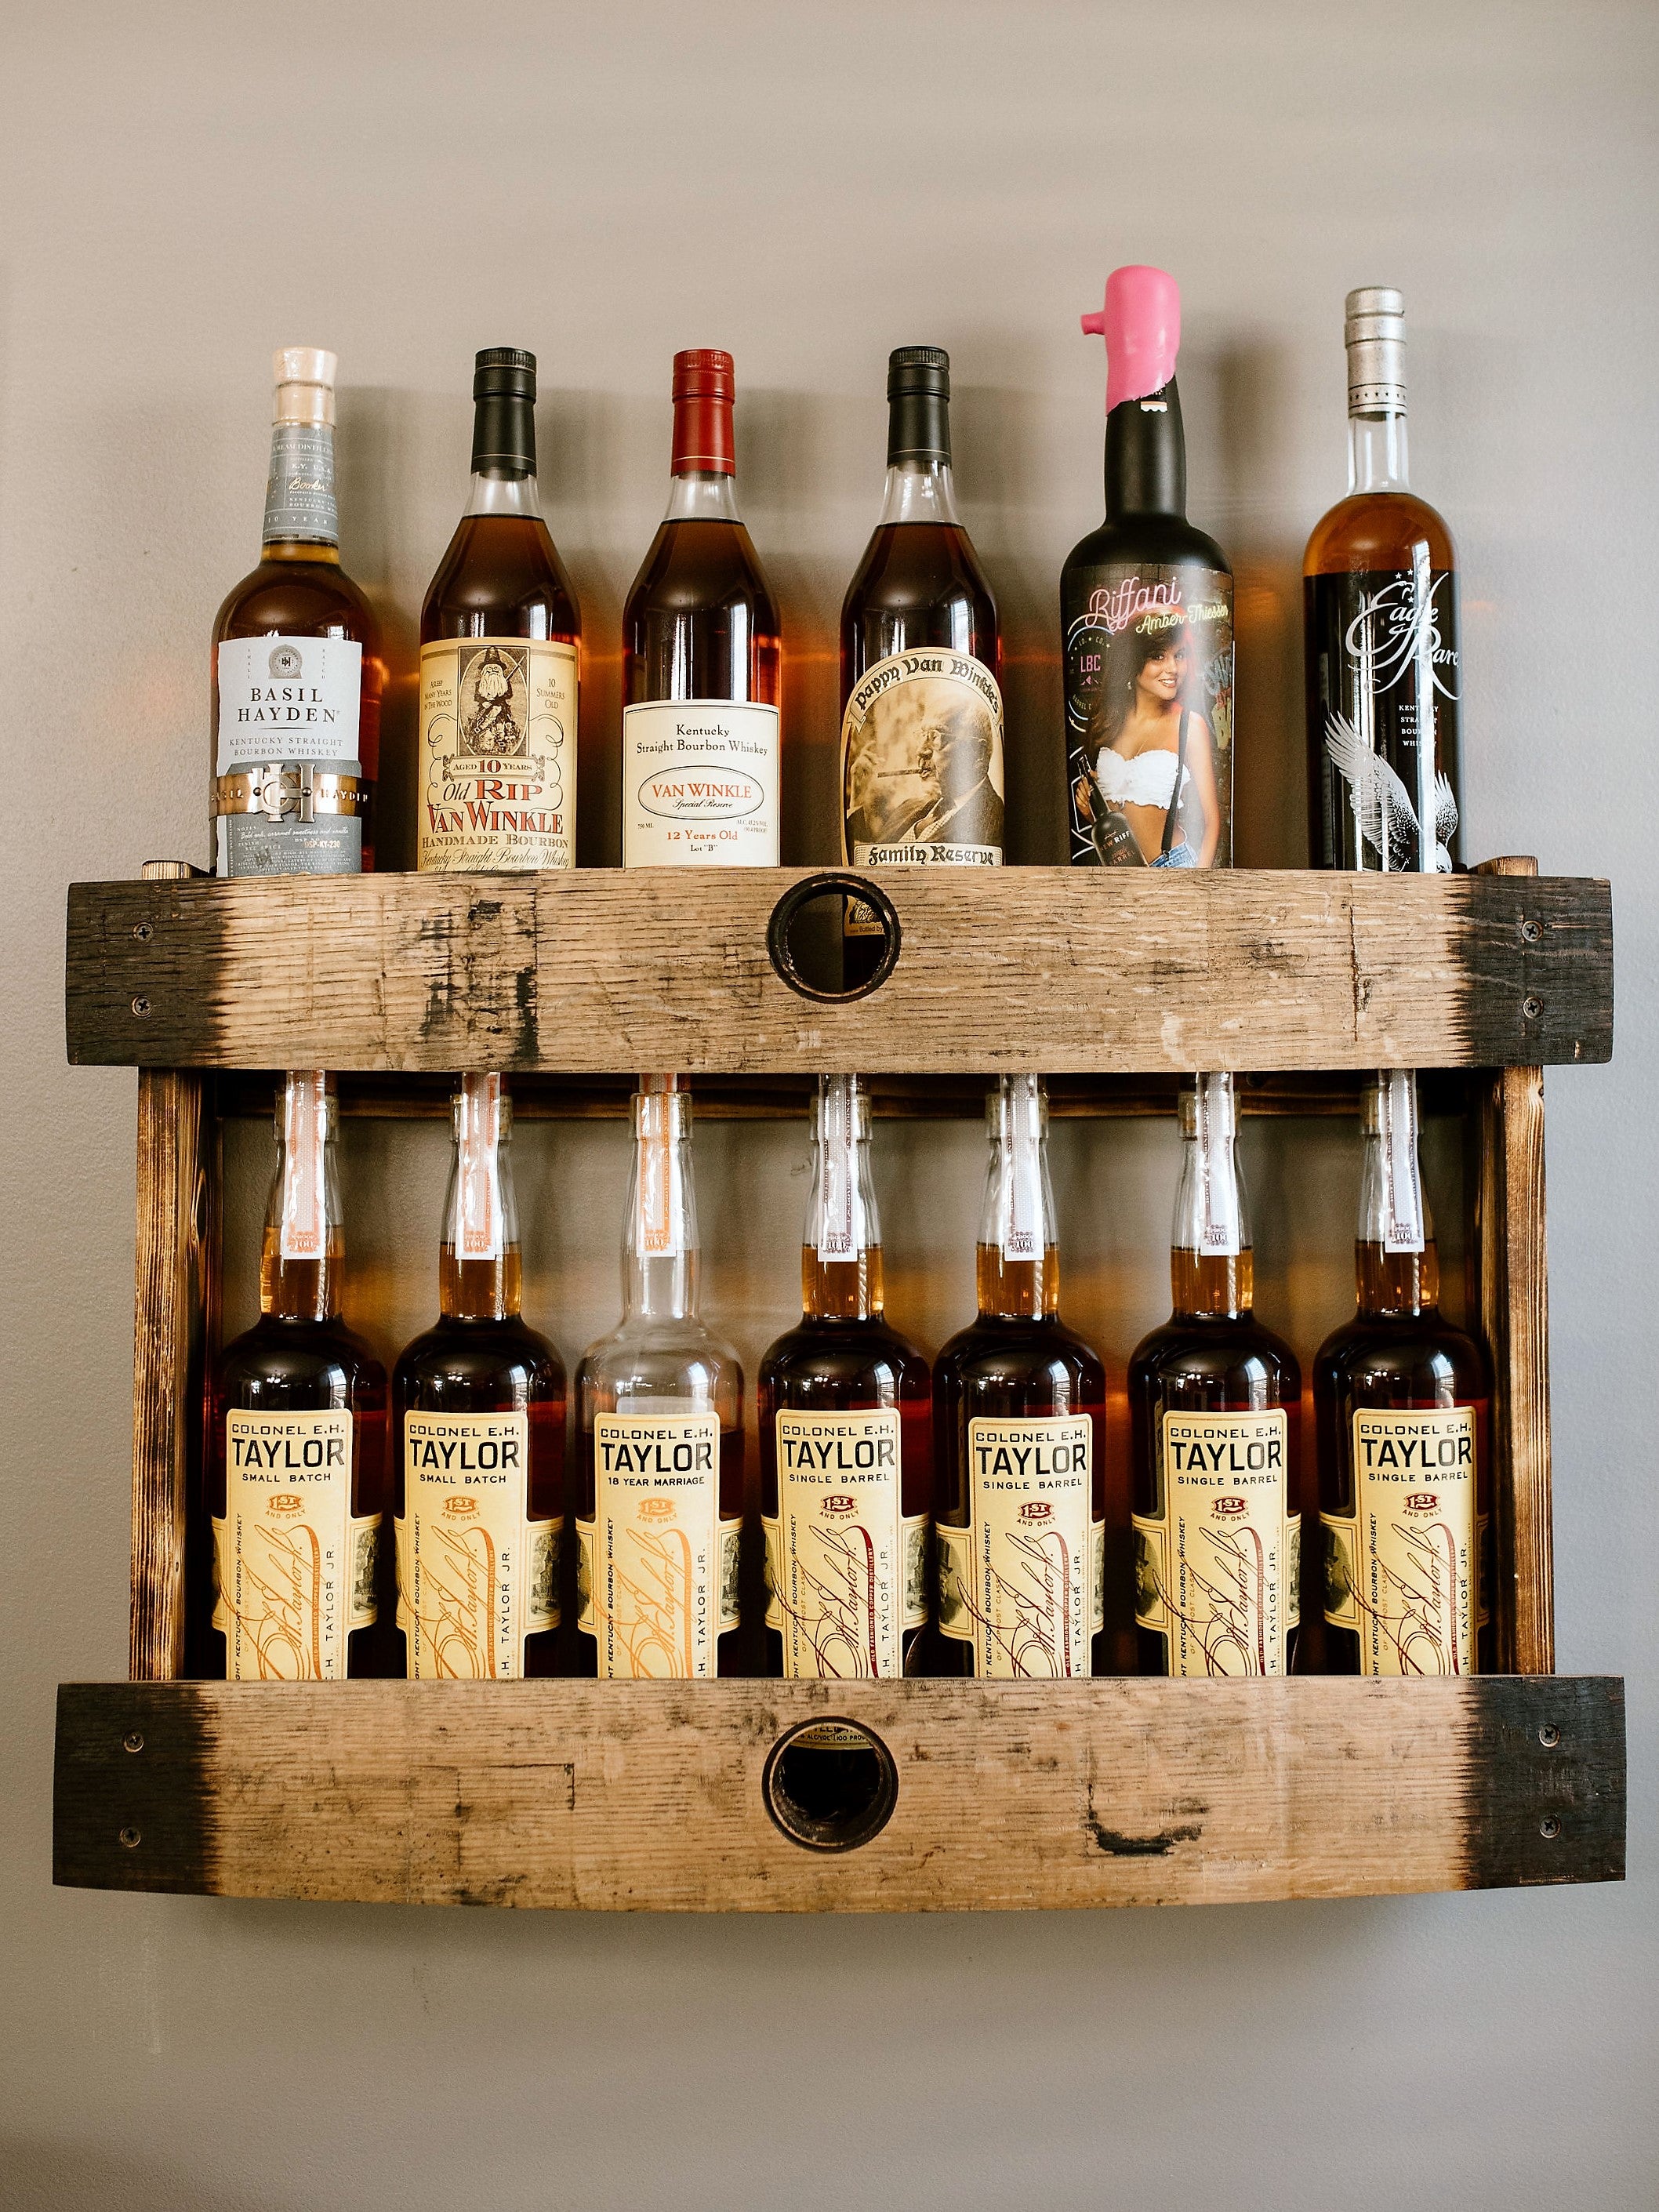 Bourbon Whiskey Barrel Stave Shelf, 2 Levels, Torched Liquor Shelf, bourbon bottle display cabinet, staged with barrel bar